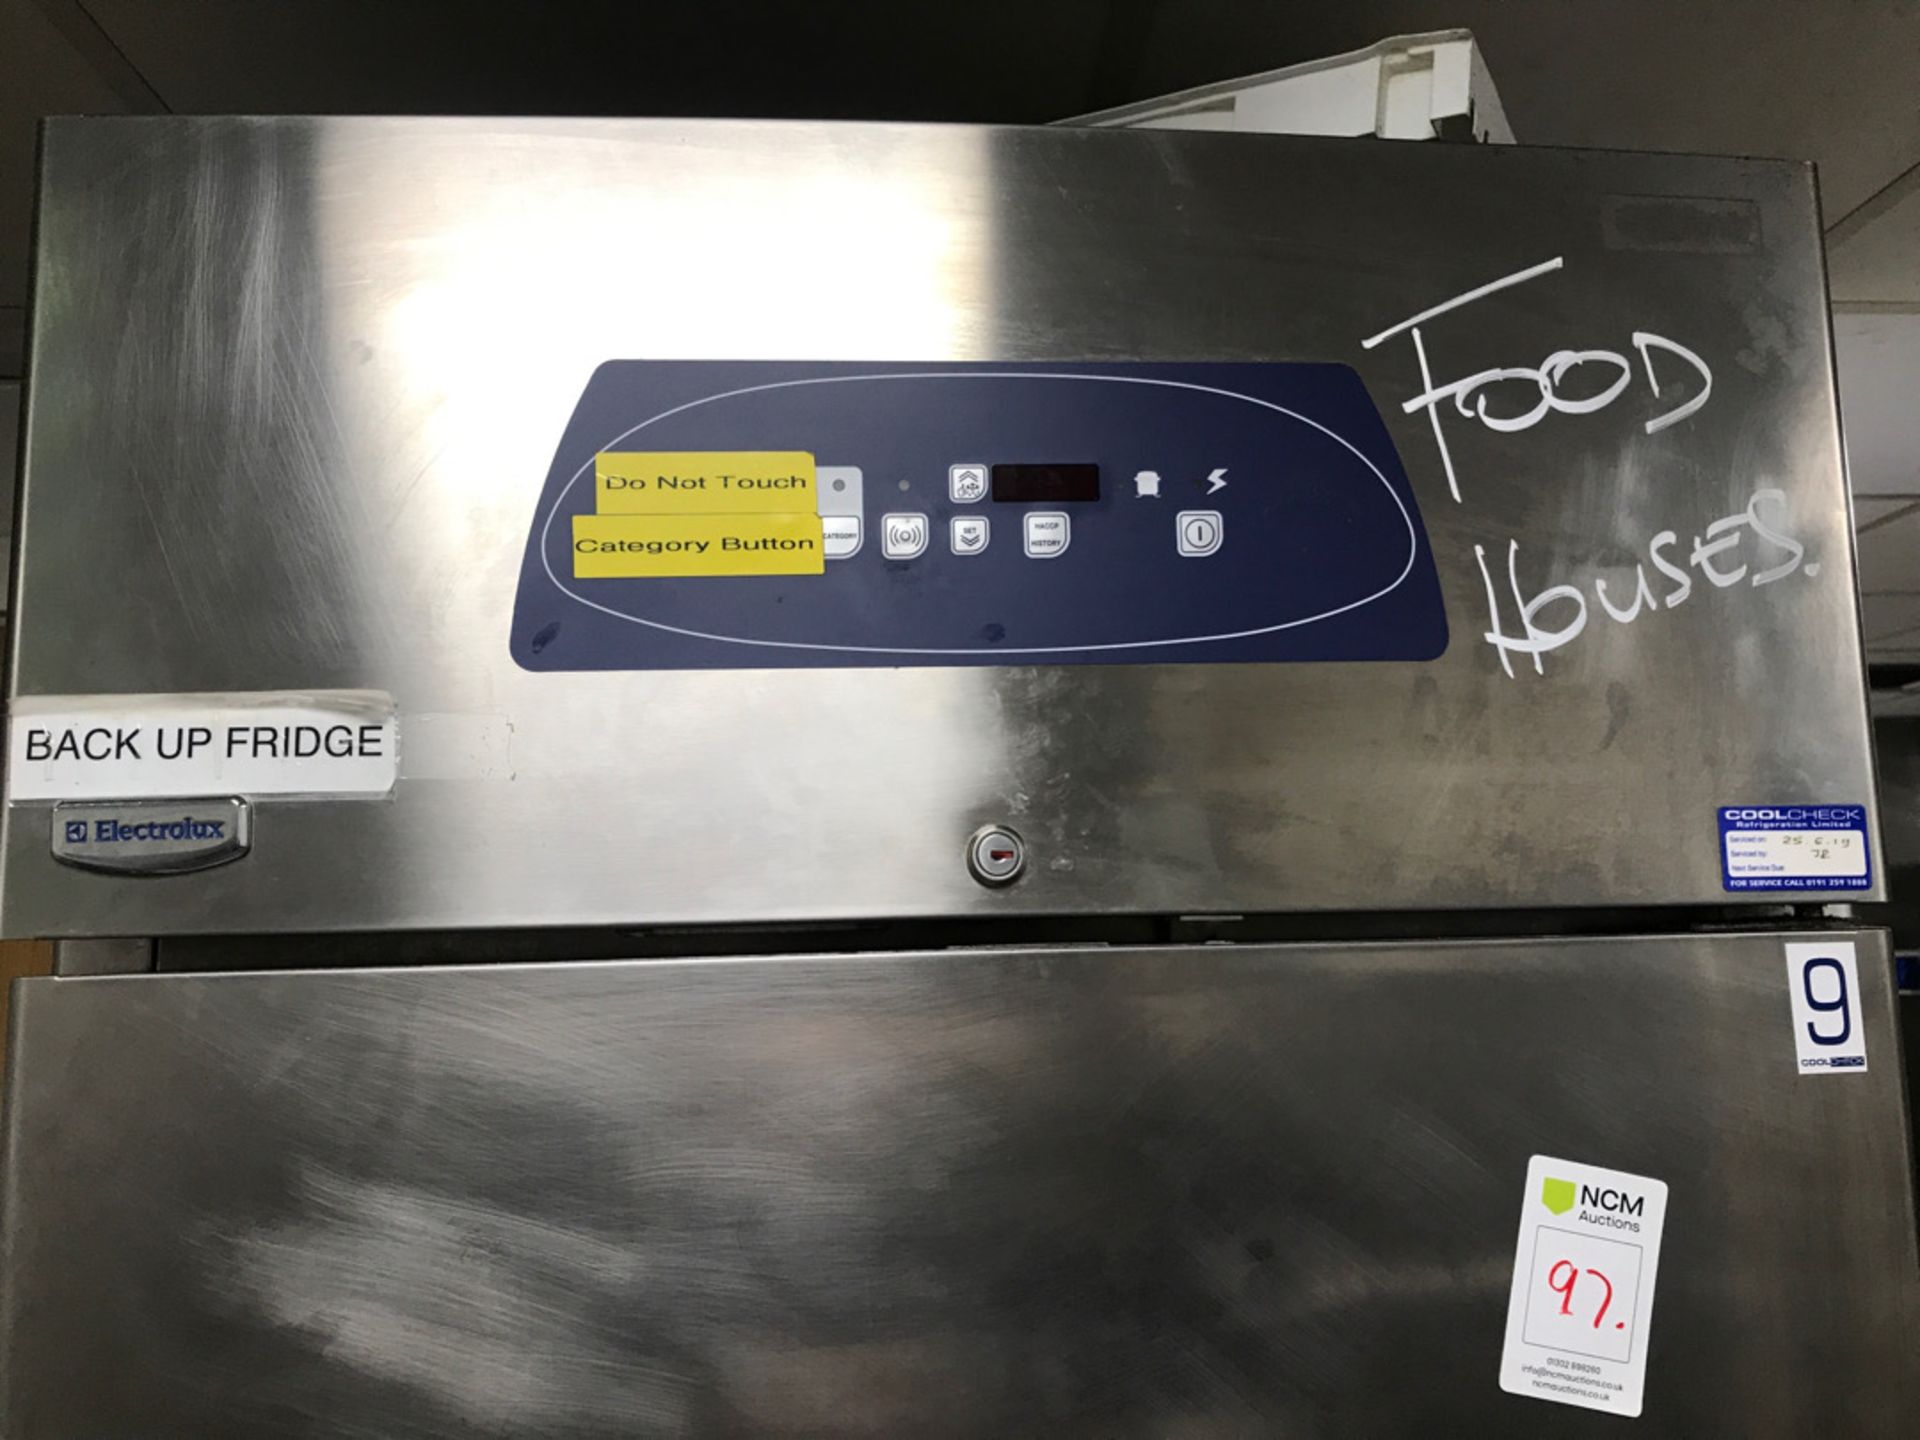 Electrolux up right fridge - Image 2 of 3